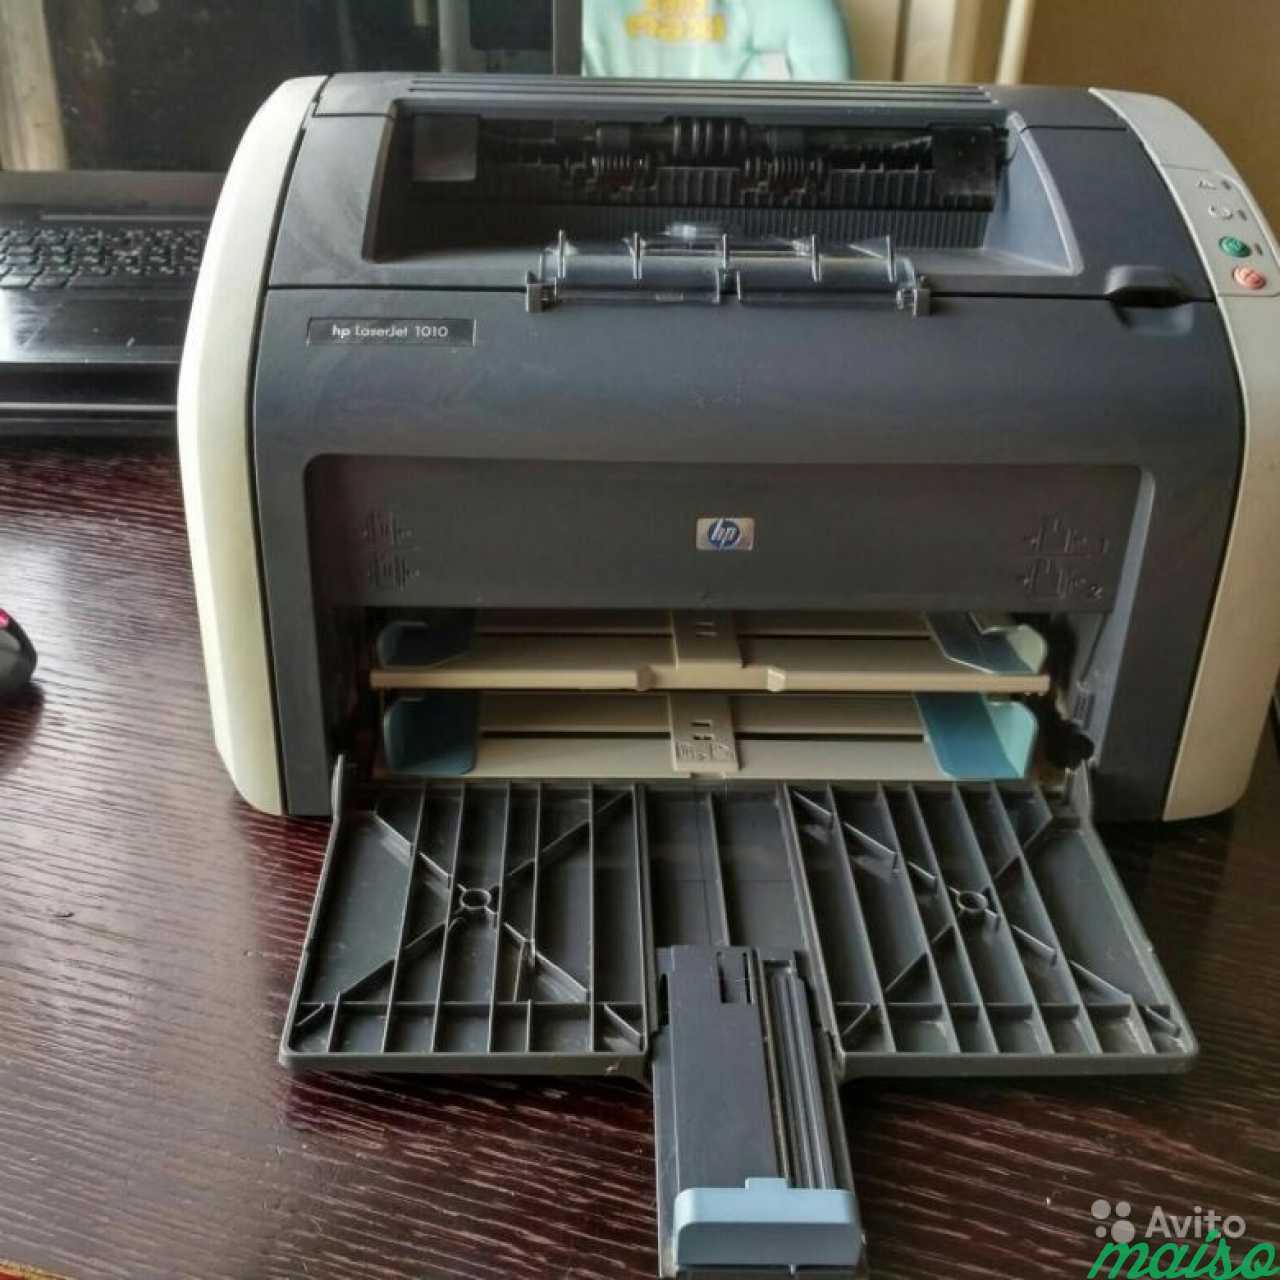 Принтер 1010 купить. Принтер НР лазер Джет 1010.